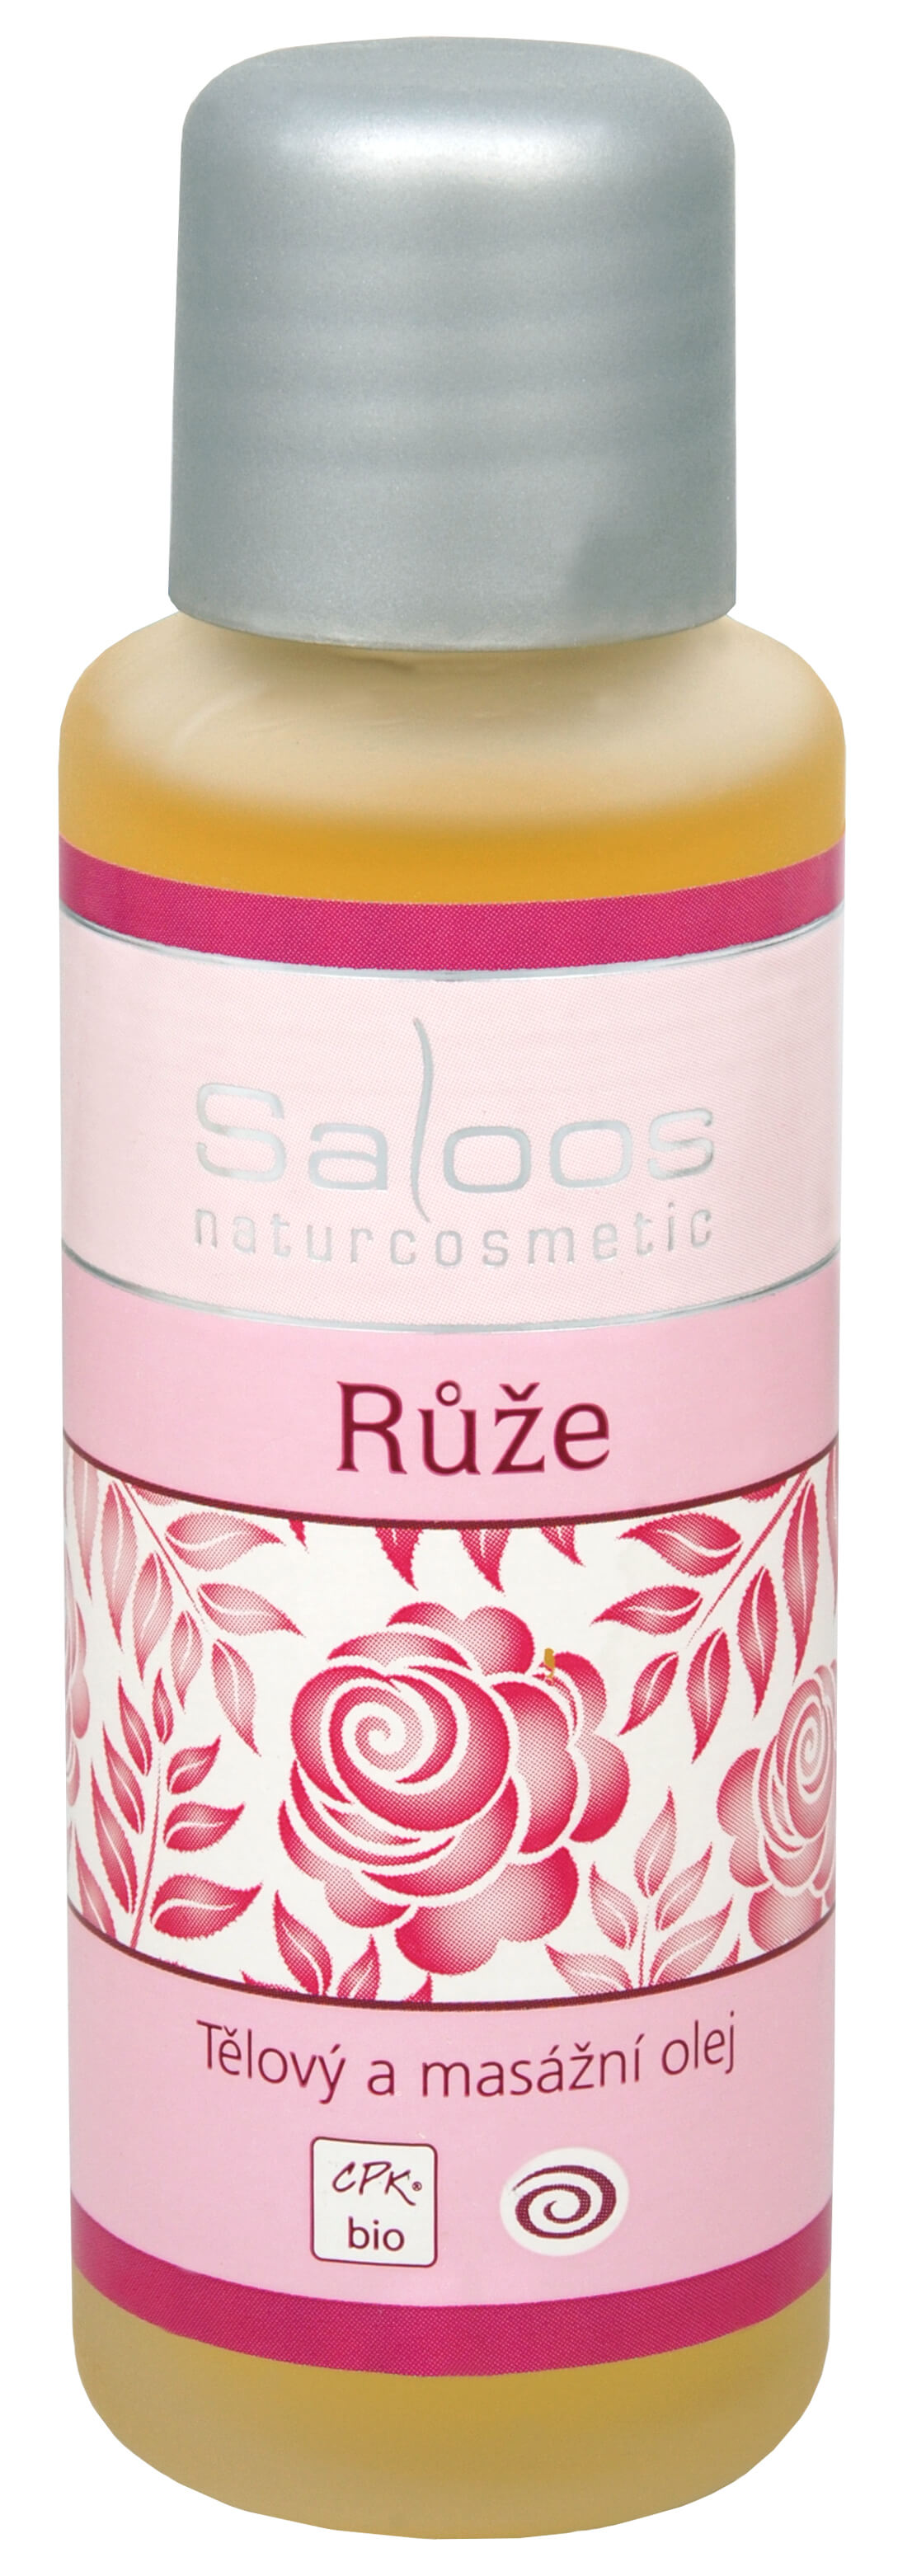 Zobrazit detail výrobku Saloos Bio tělový a masážní olej - Růže 50 ml